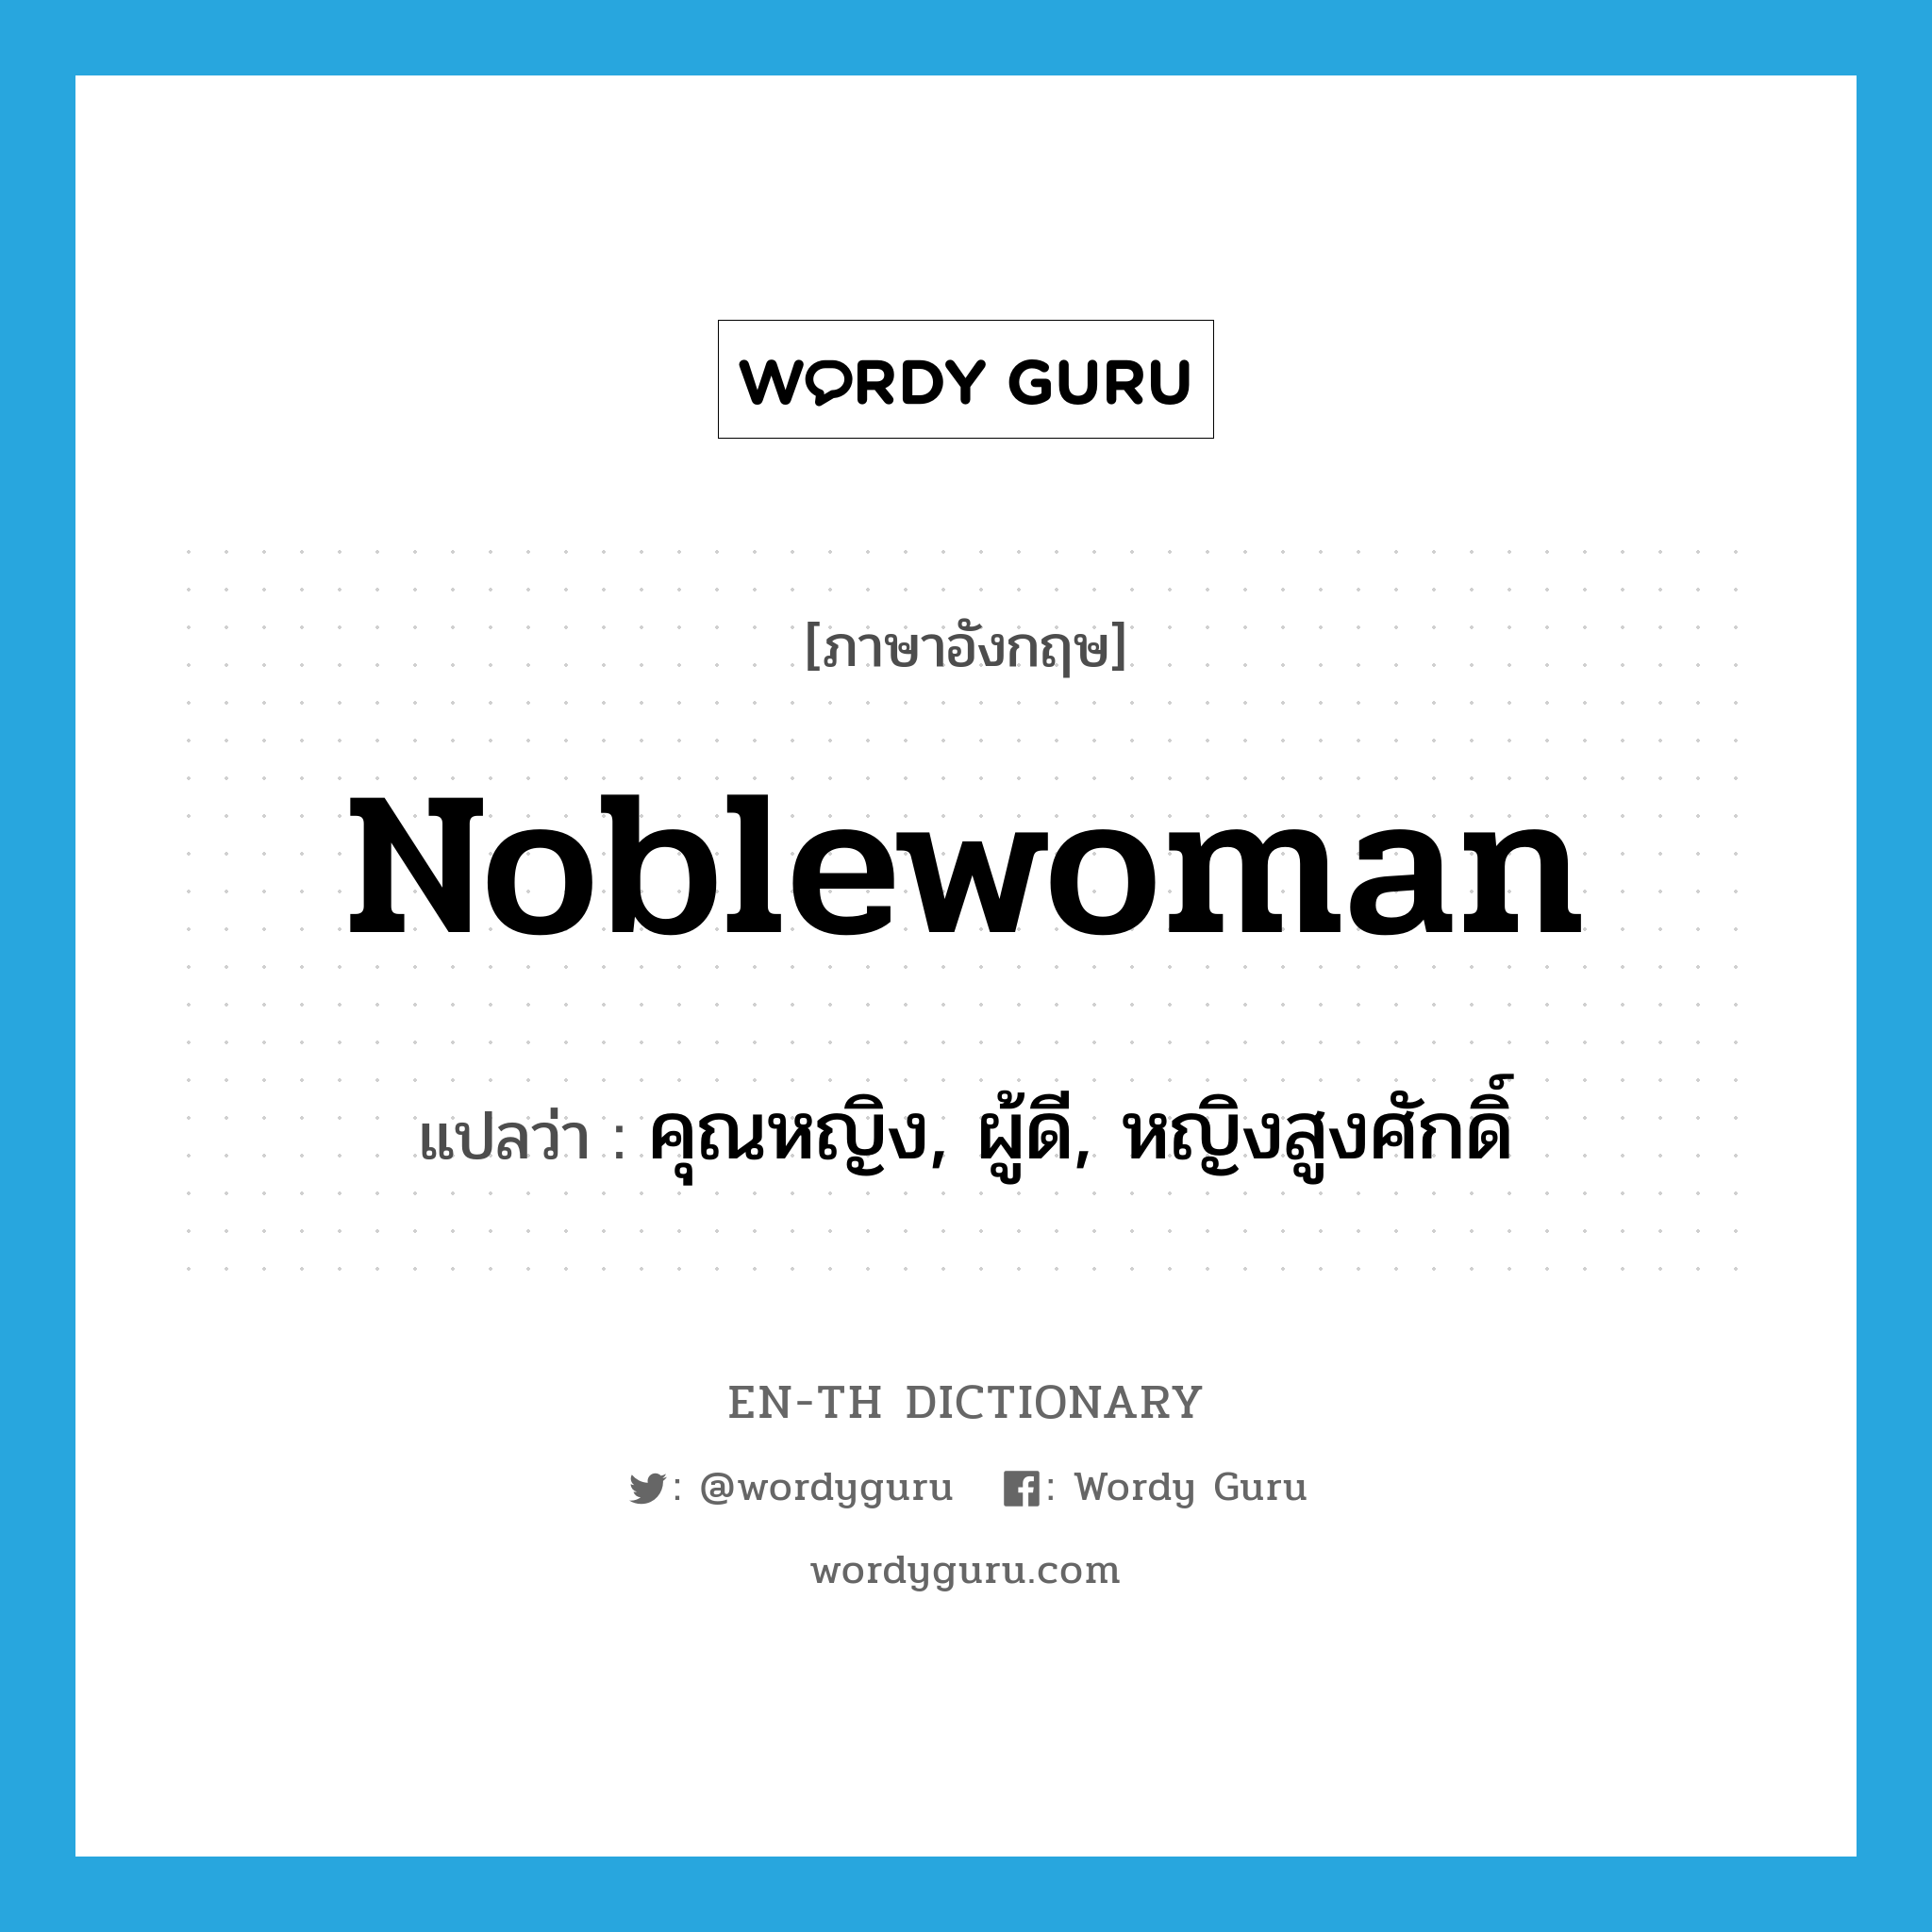 noblewoman แปลว่า?, คำศัพท์ภาษาอังกฤษ noblewoman แปลว่า คุณหญิง, ผู้ดี, หญิงสูงศักดิ์ ประเภท N หมวด N